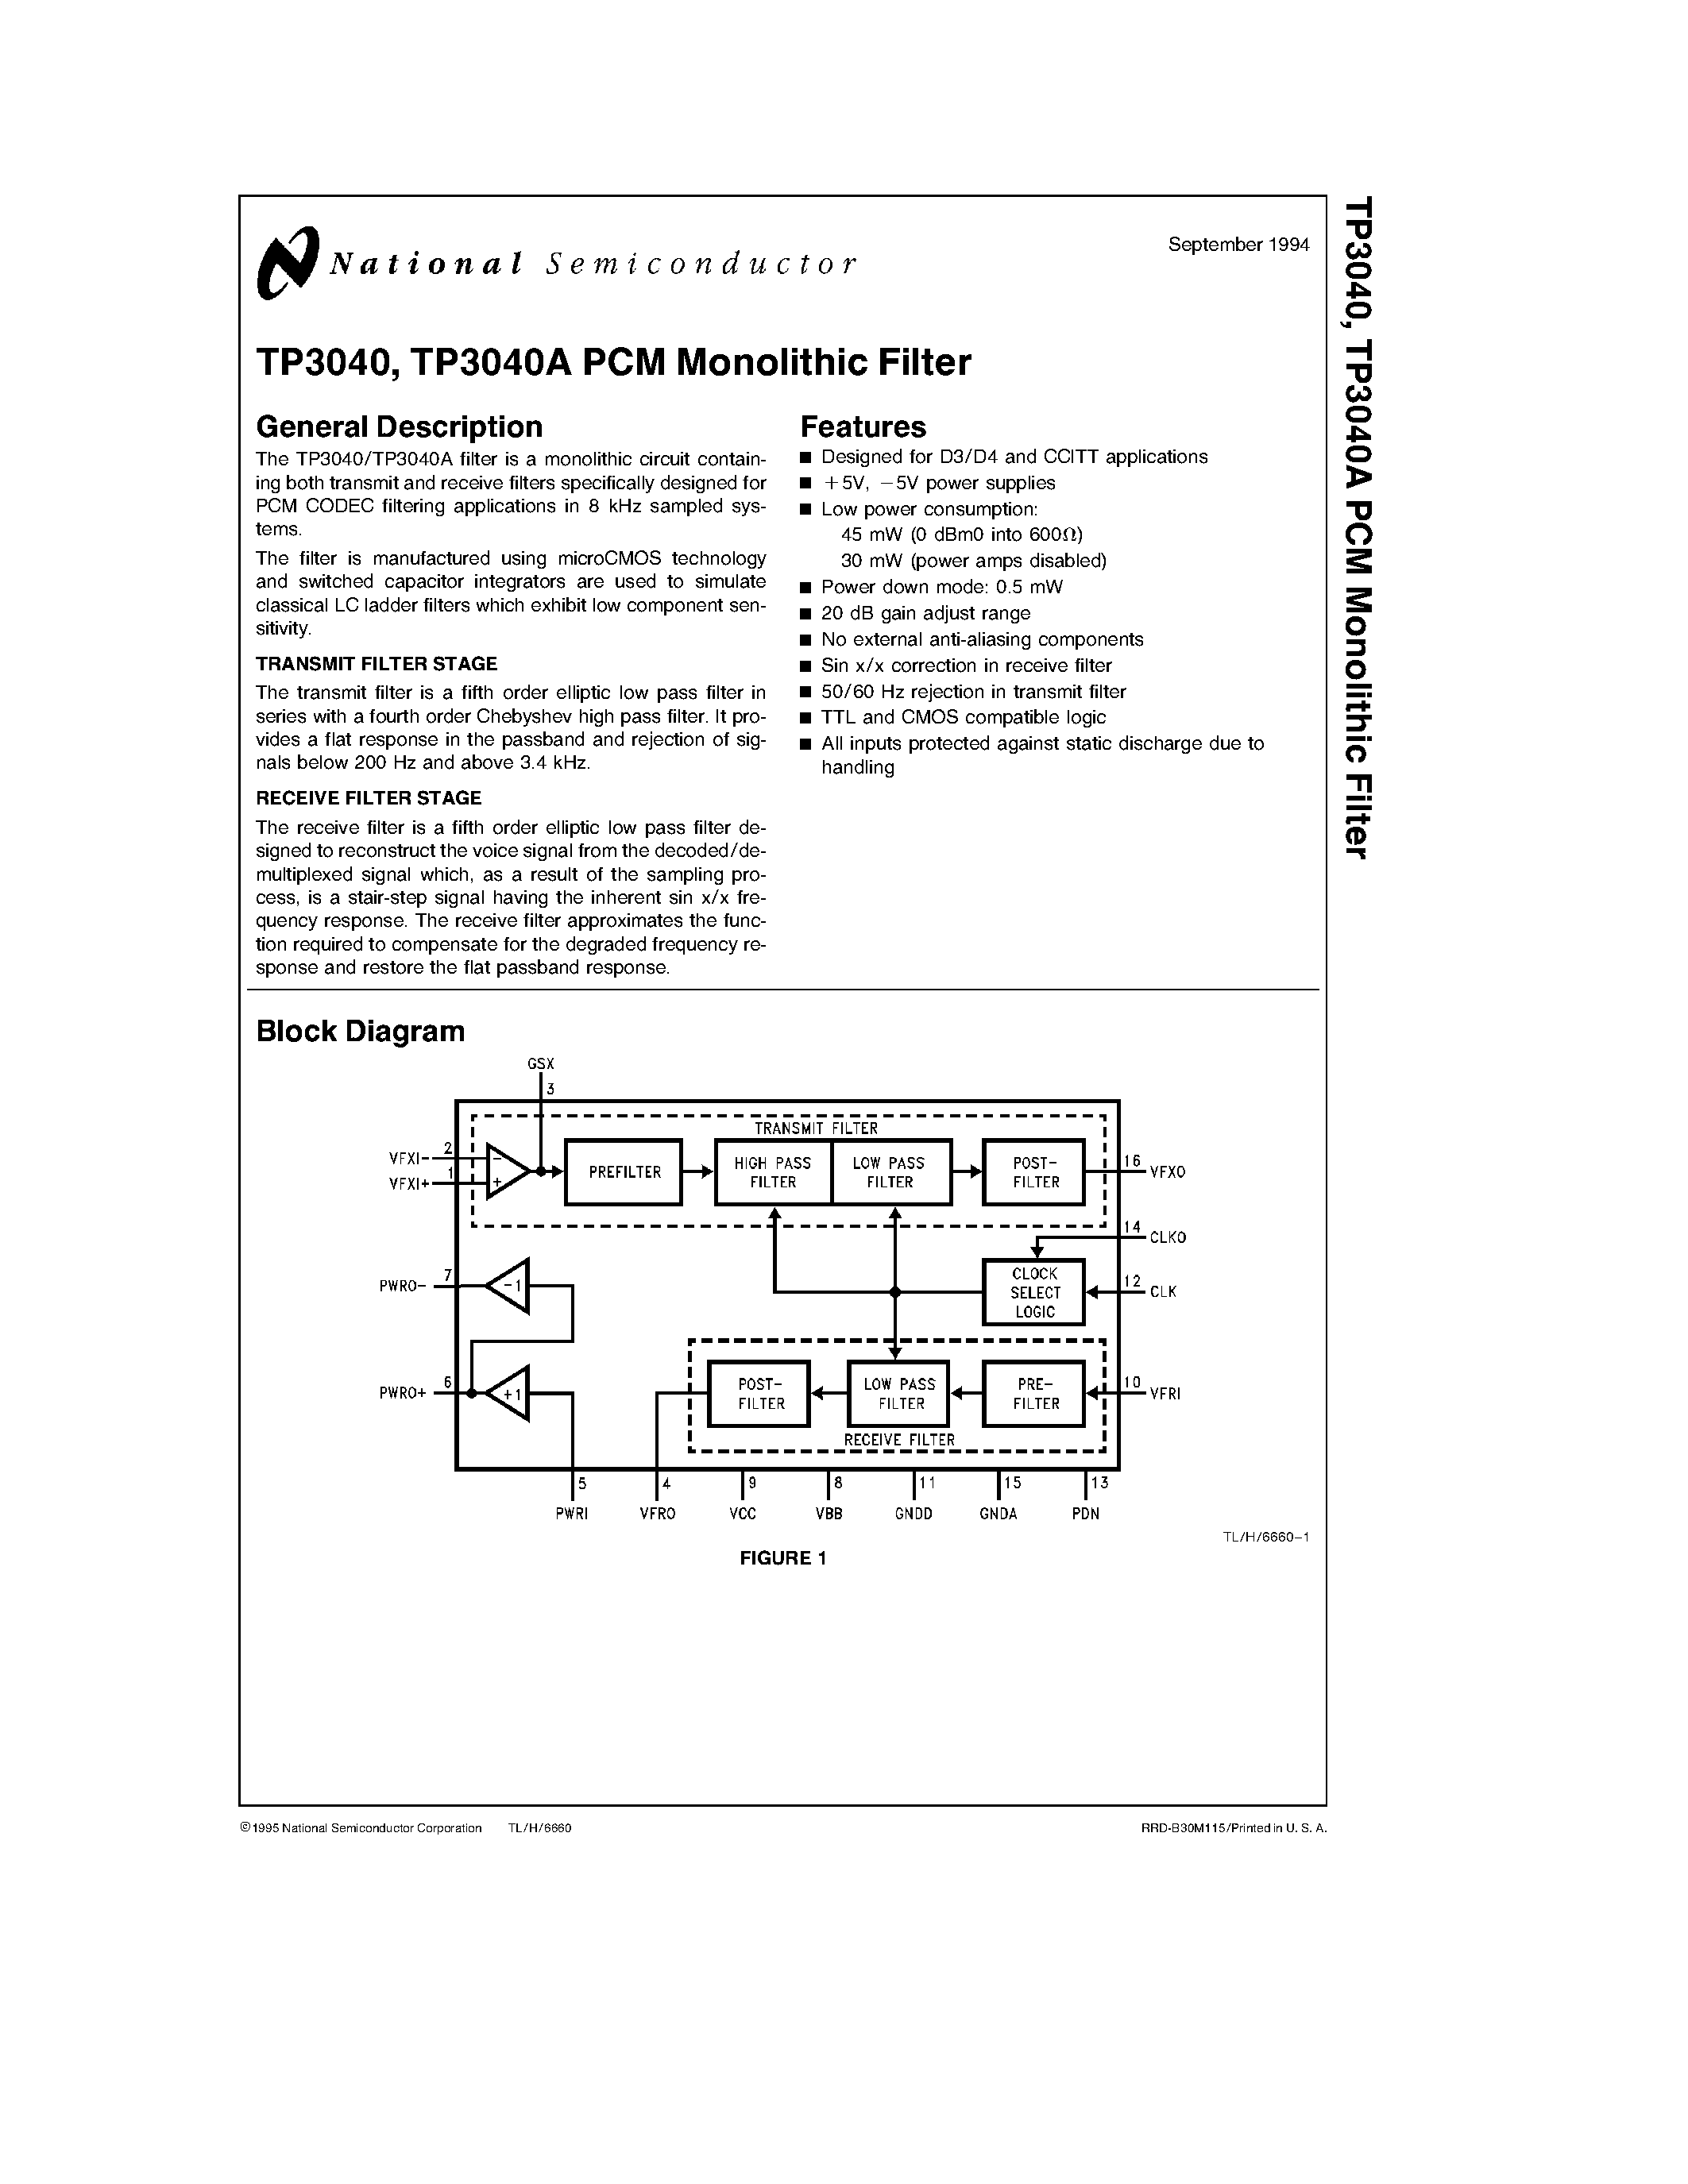 Даташит TP3040J - TP3040/ TP3040A PCM Monolithic Filter страница 1